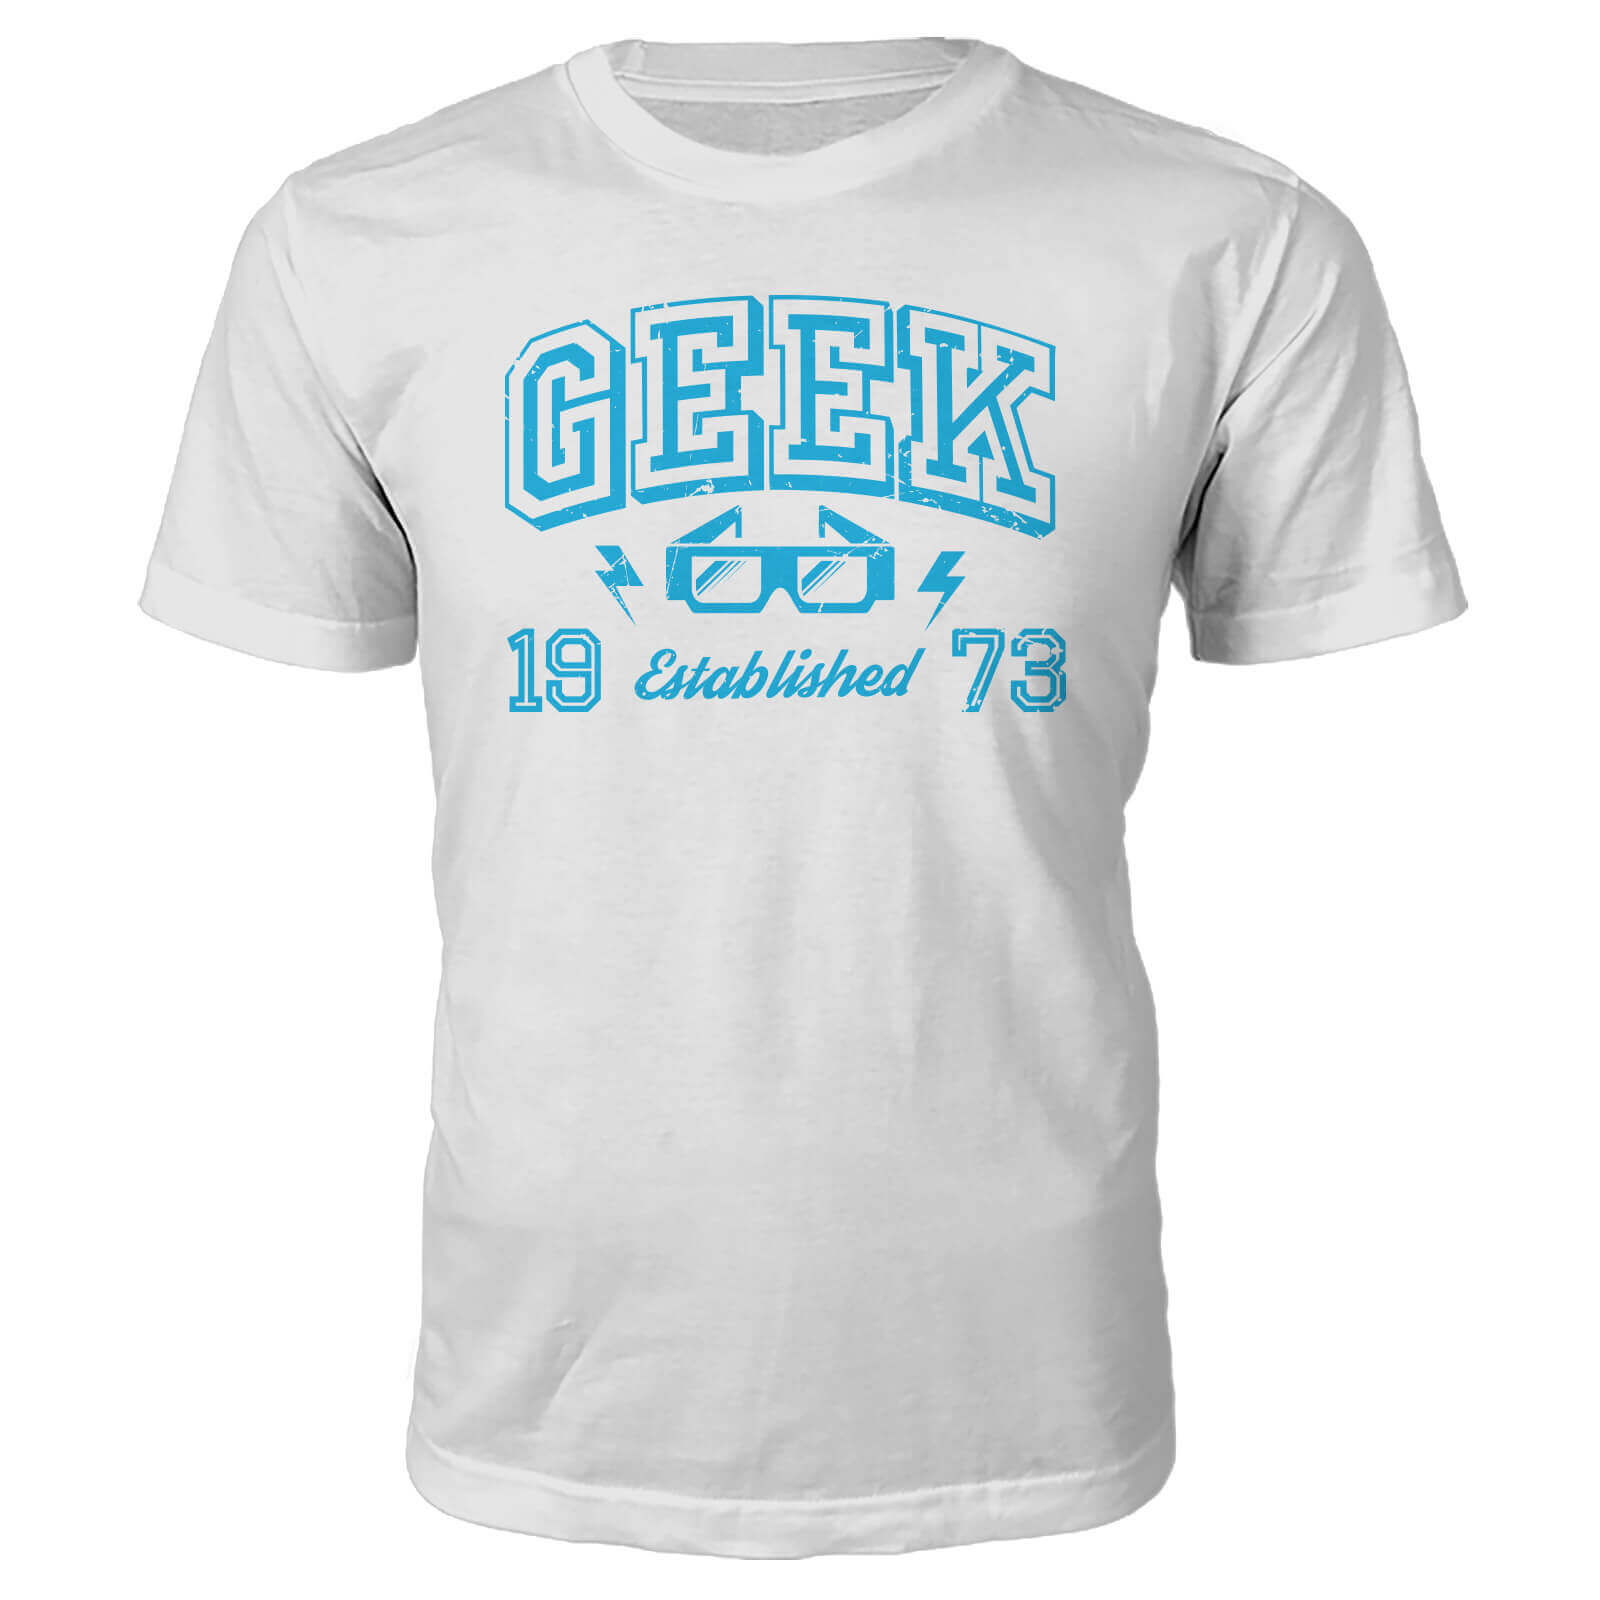 Geek Established 1970's T-Shirt- White - M - 1973